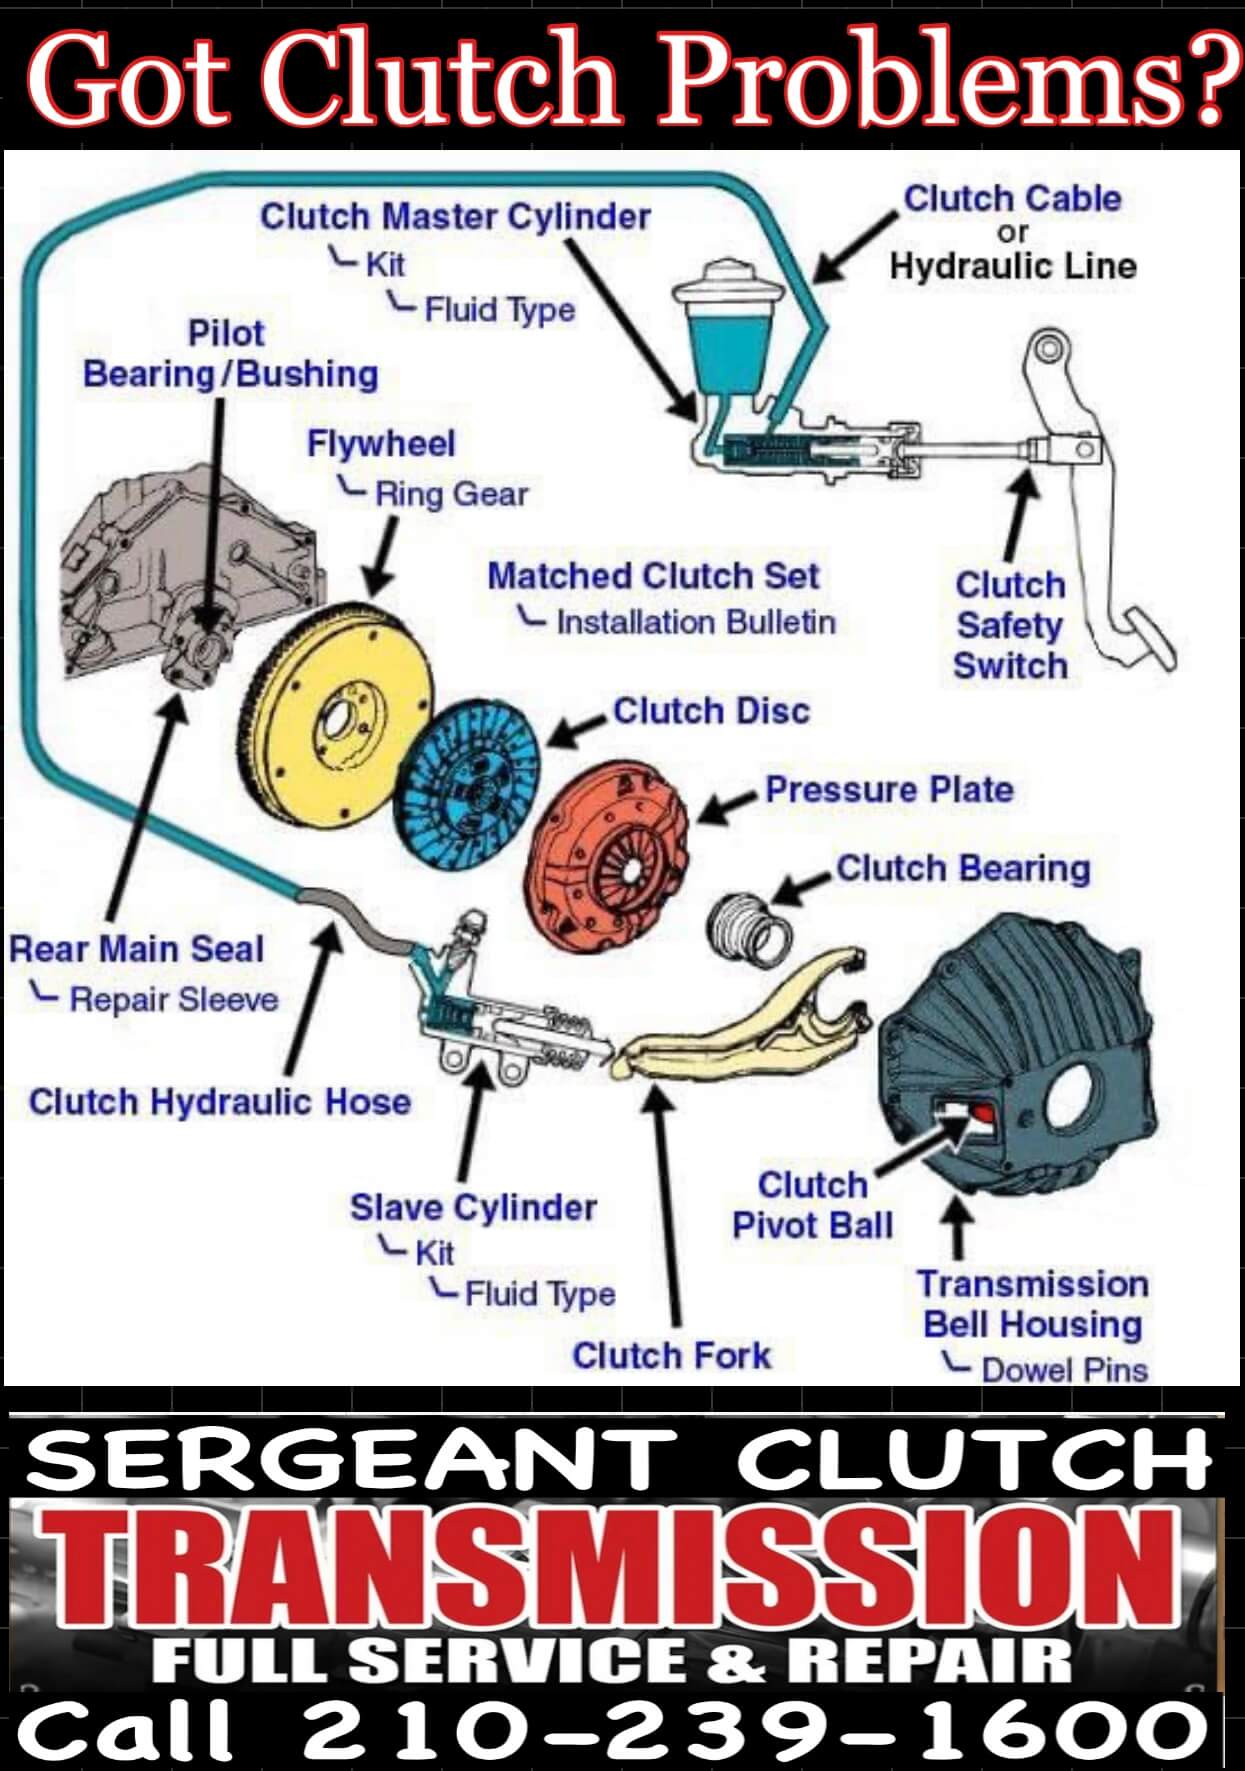 Got Clutch Problems - Call Sergeant Clutch